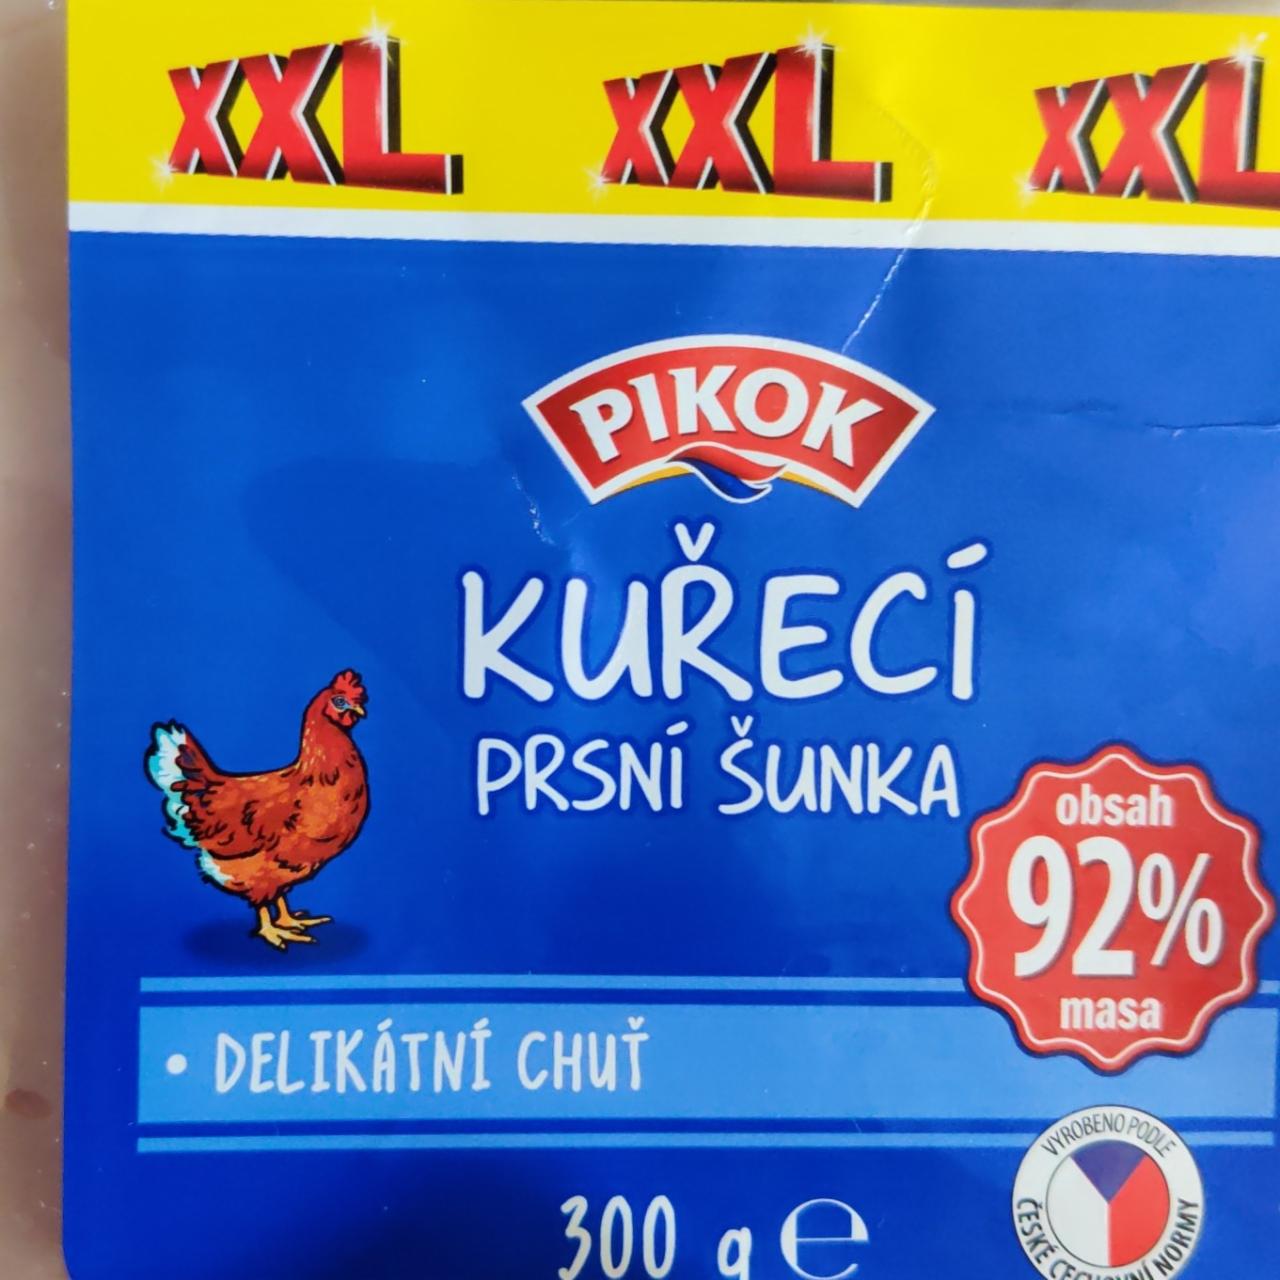 Zdjęcia - kuřecí prsní šunka 92% masa Pikok